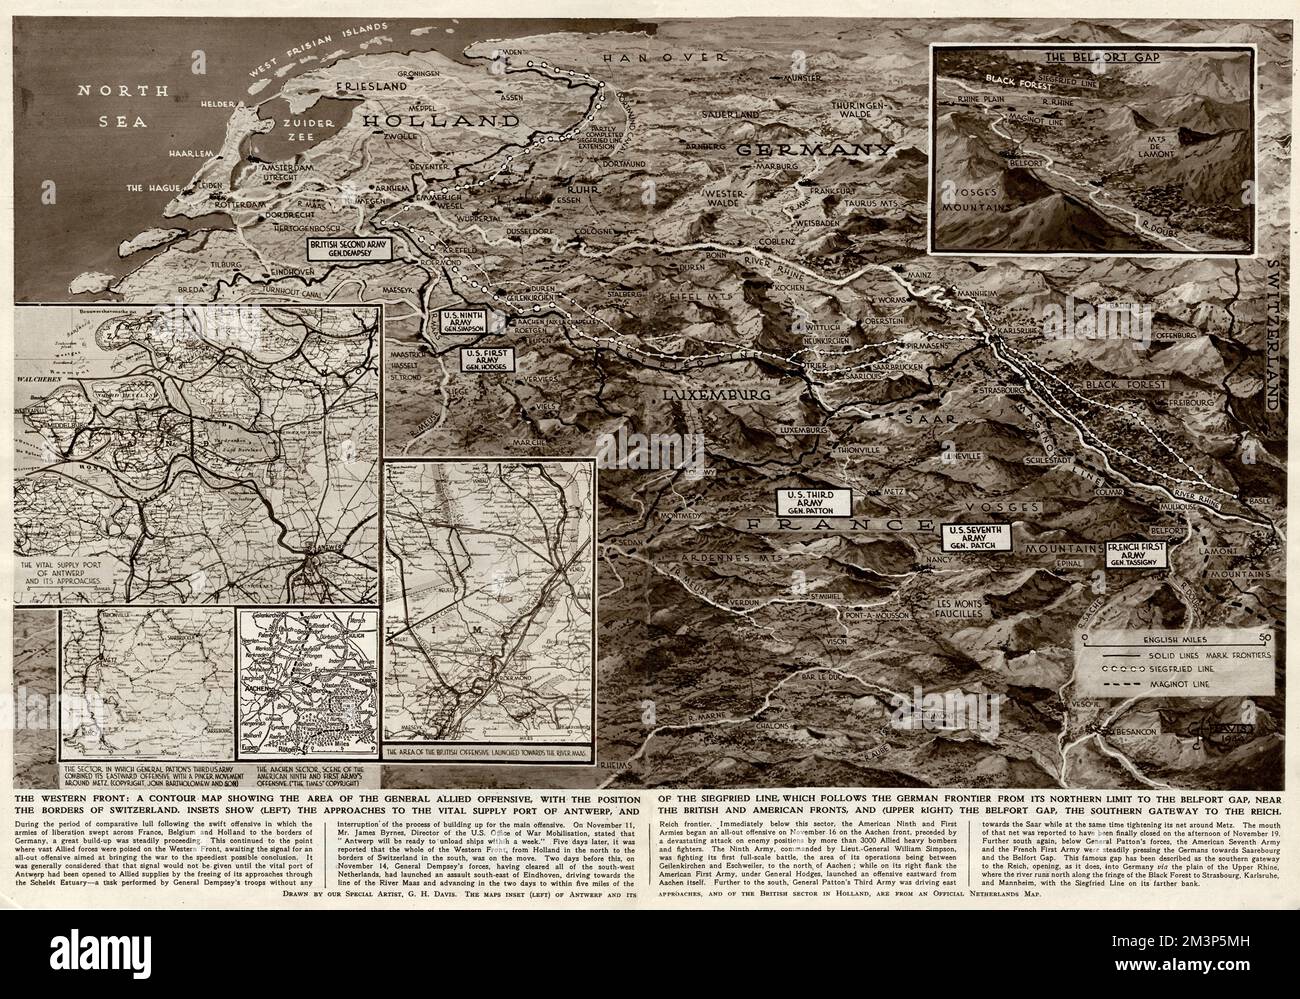 Il fronte occidentale: Una mappa di contorno che mostra l'area dell'offensiva generale alleata in questa fase della seconda guerra mondiale. Mostra la Siegfried Line, il porto di approvvigionamento di Anversa, i fronti britannico e americano, e il Belfort Gap. Foto Stock